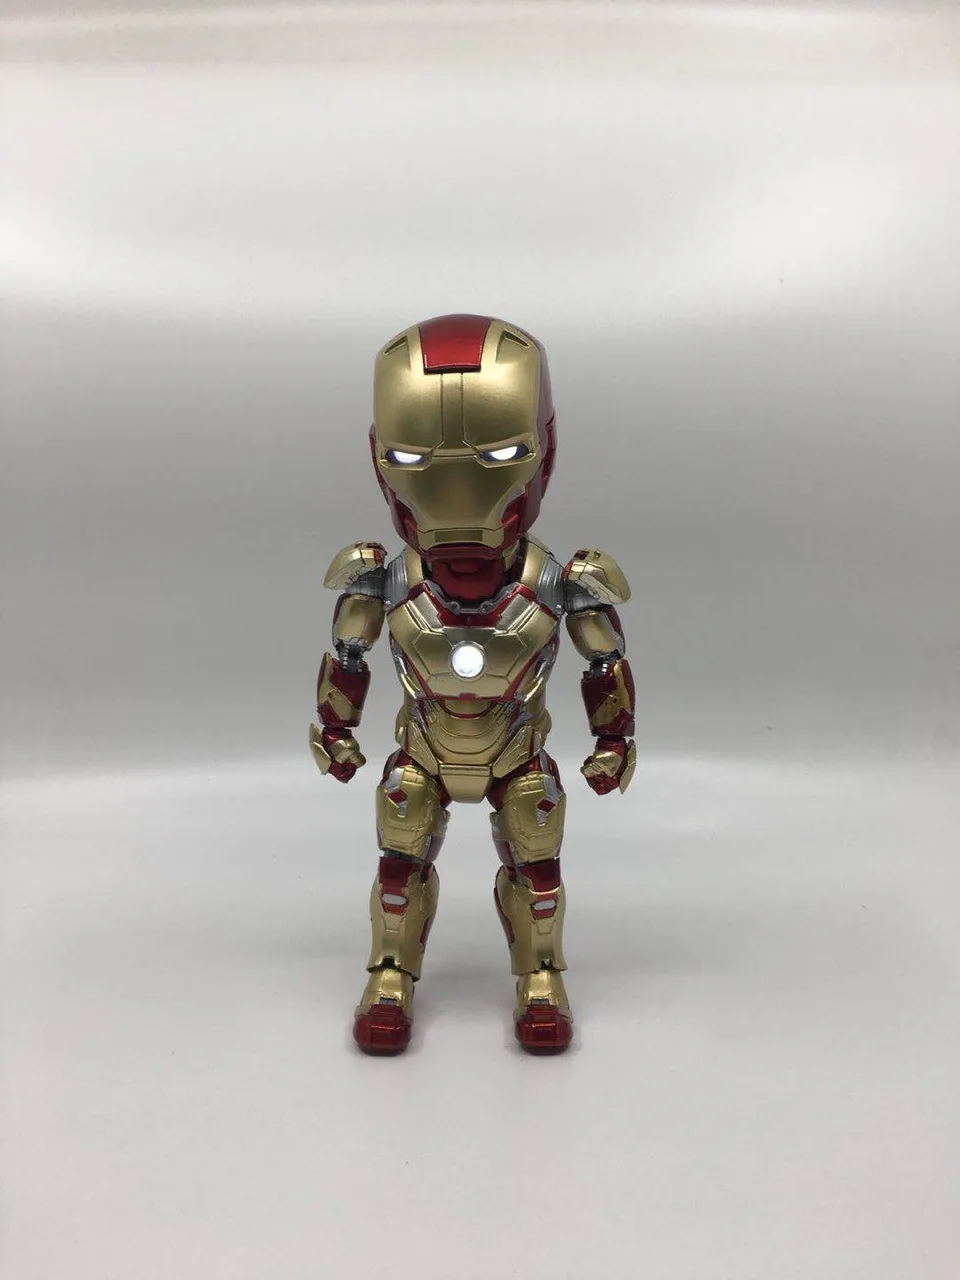 

Светящаяся экшн-фигурка Marvel Egg Attack EAA-036 Iron Man 3 MARK 42 MK XLII светильник Игрушечная модель, подарок для коллекции